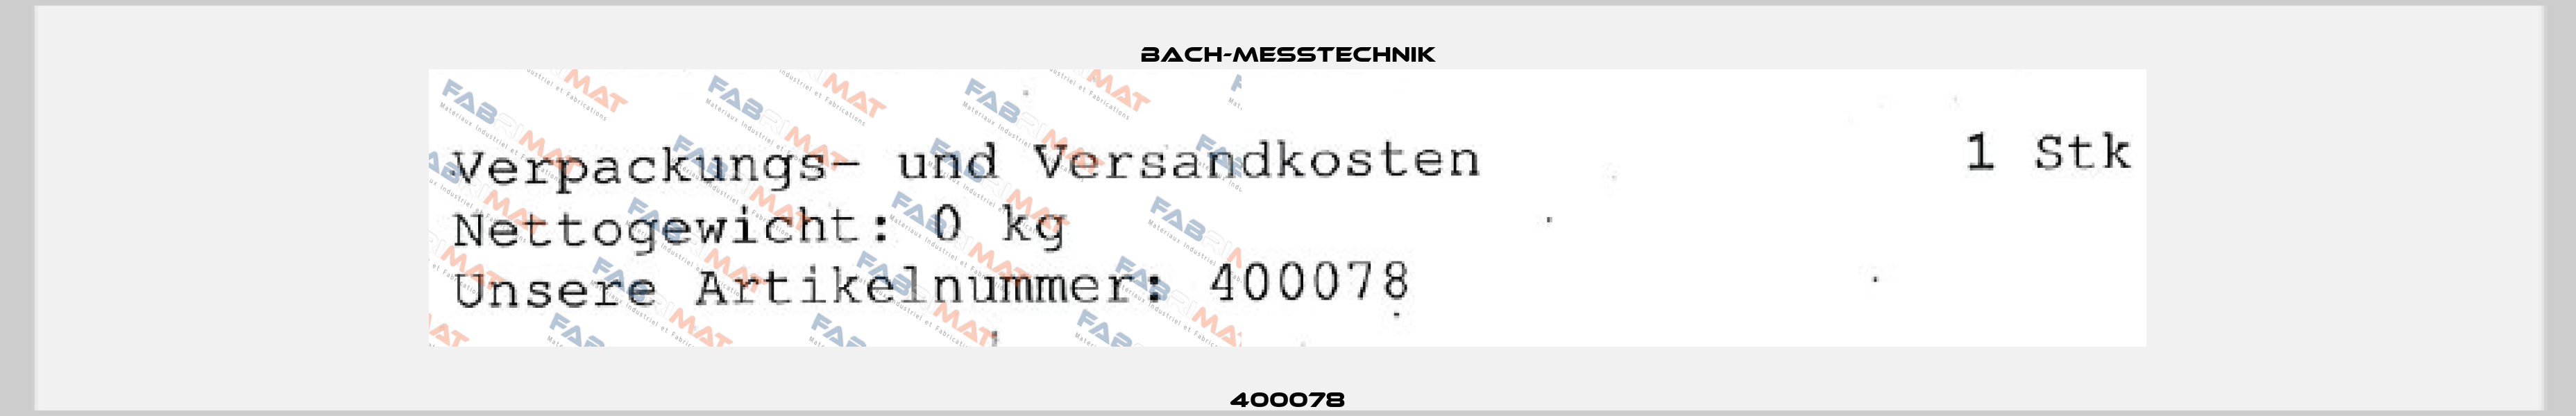 400078 Bach-messtechnik